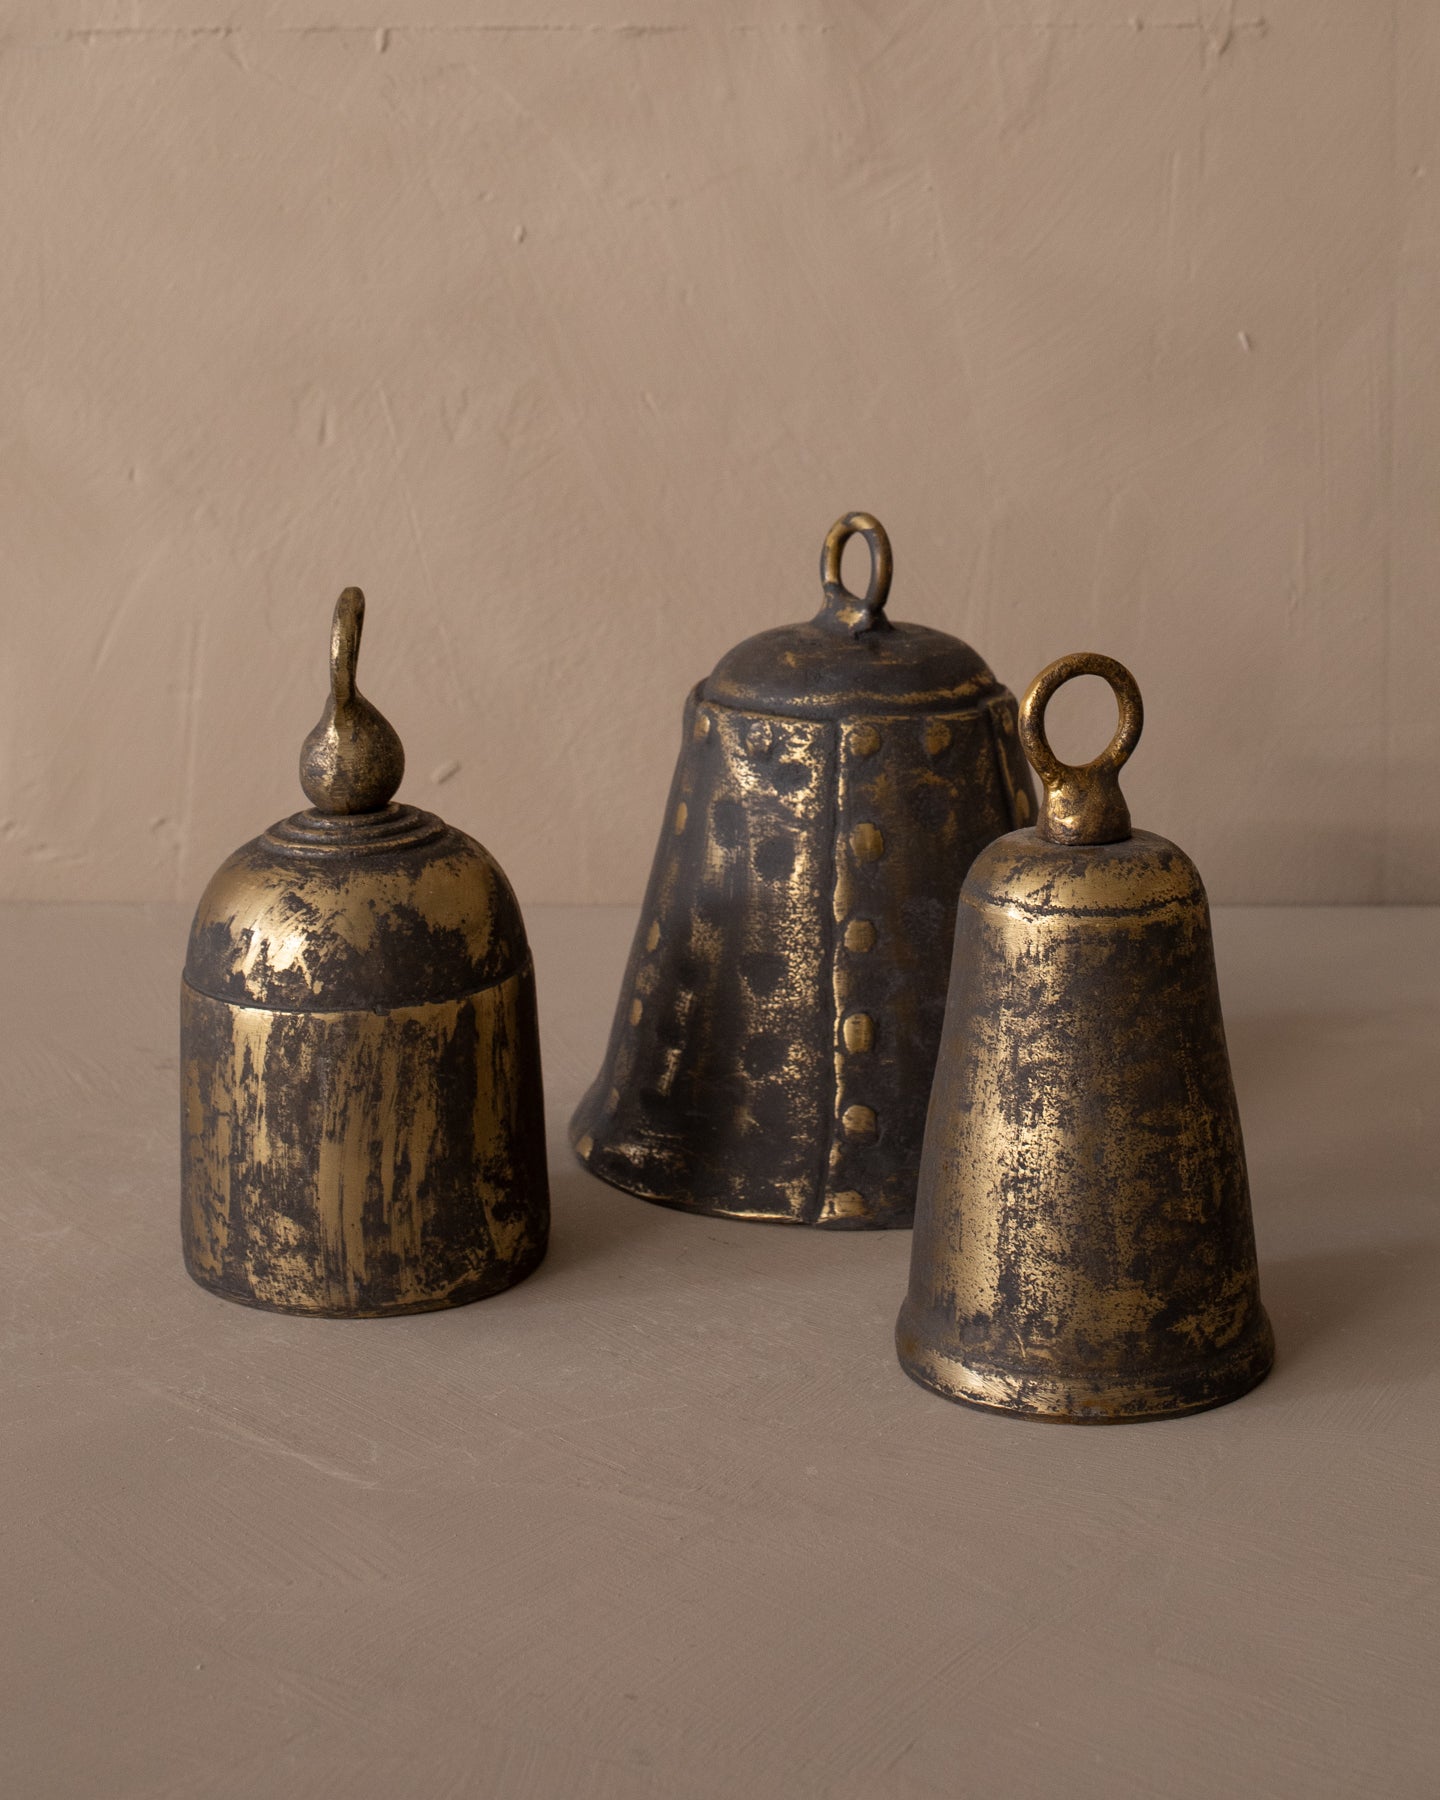 Antiqued Brass Bells – The Vintage Rug Shop